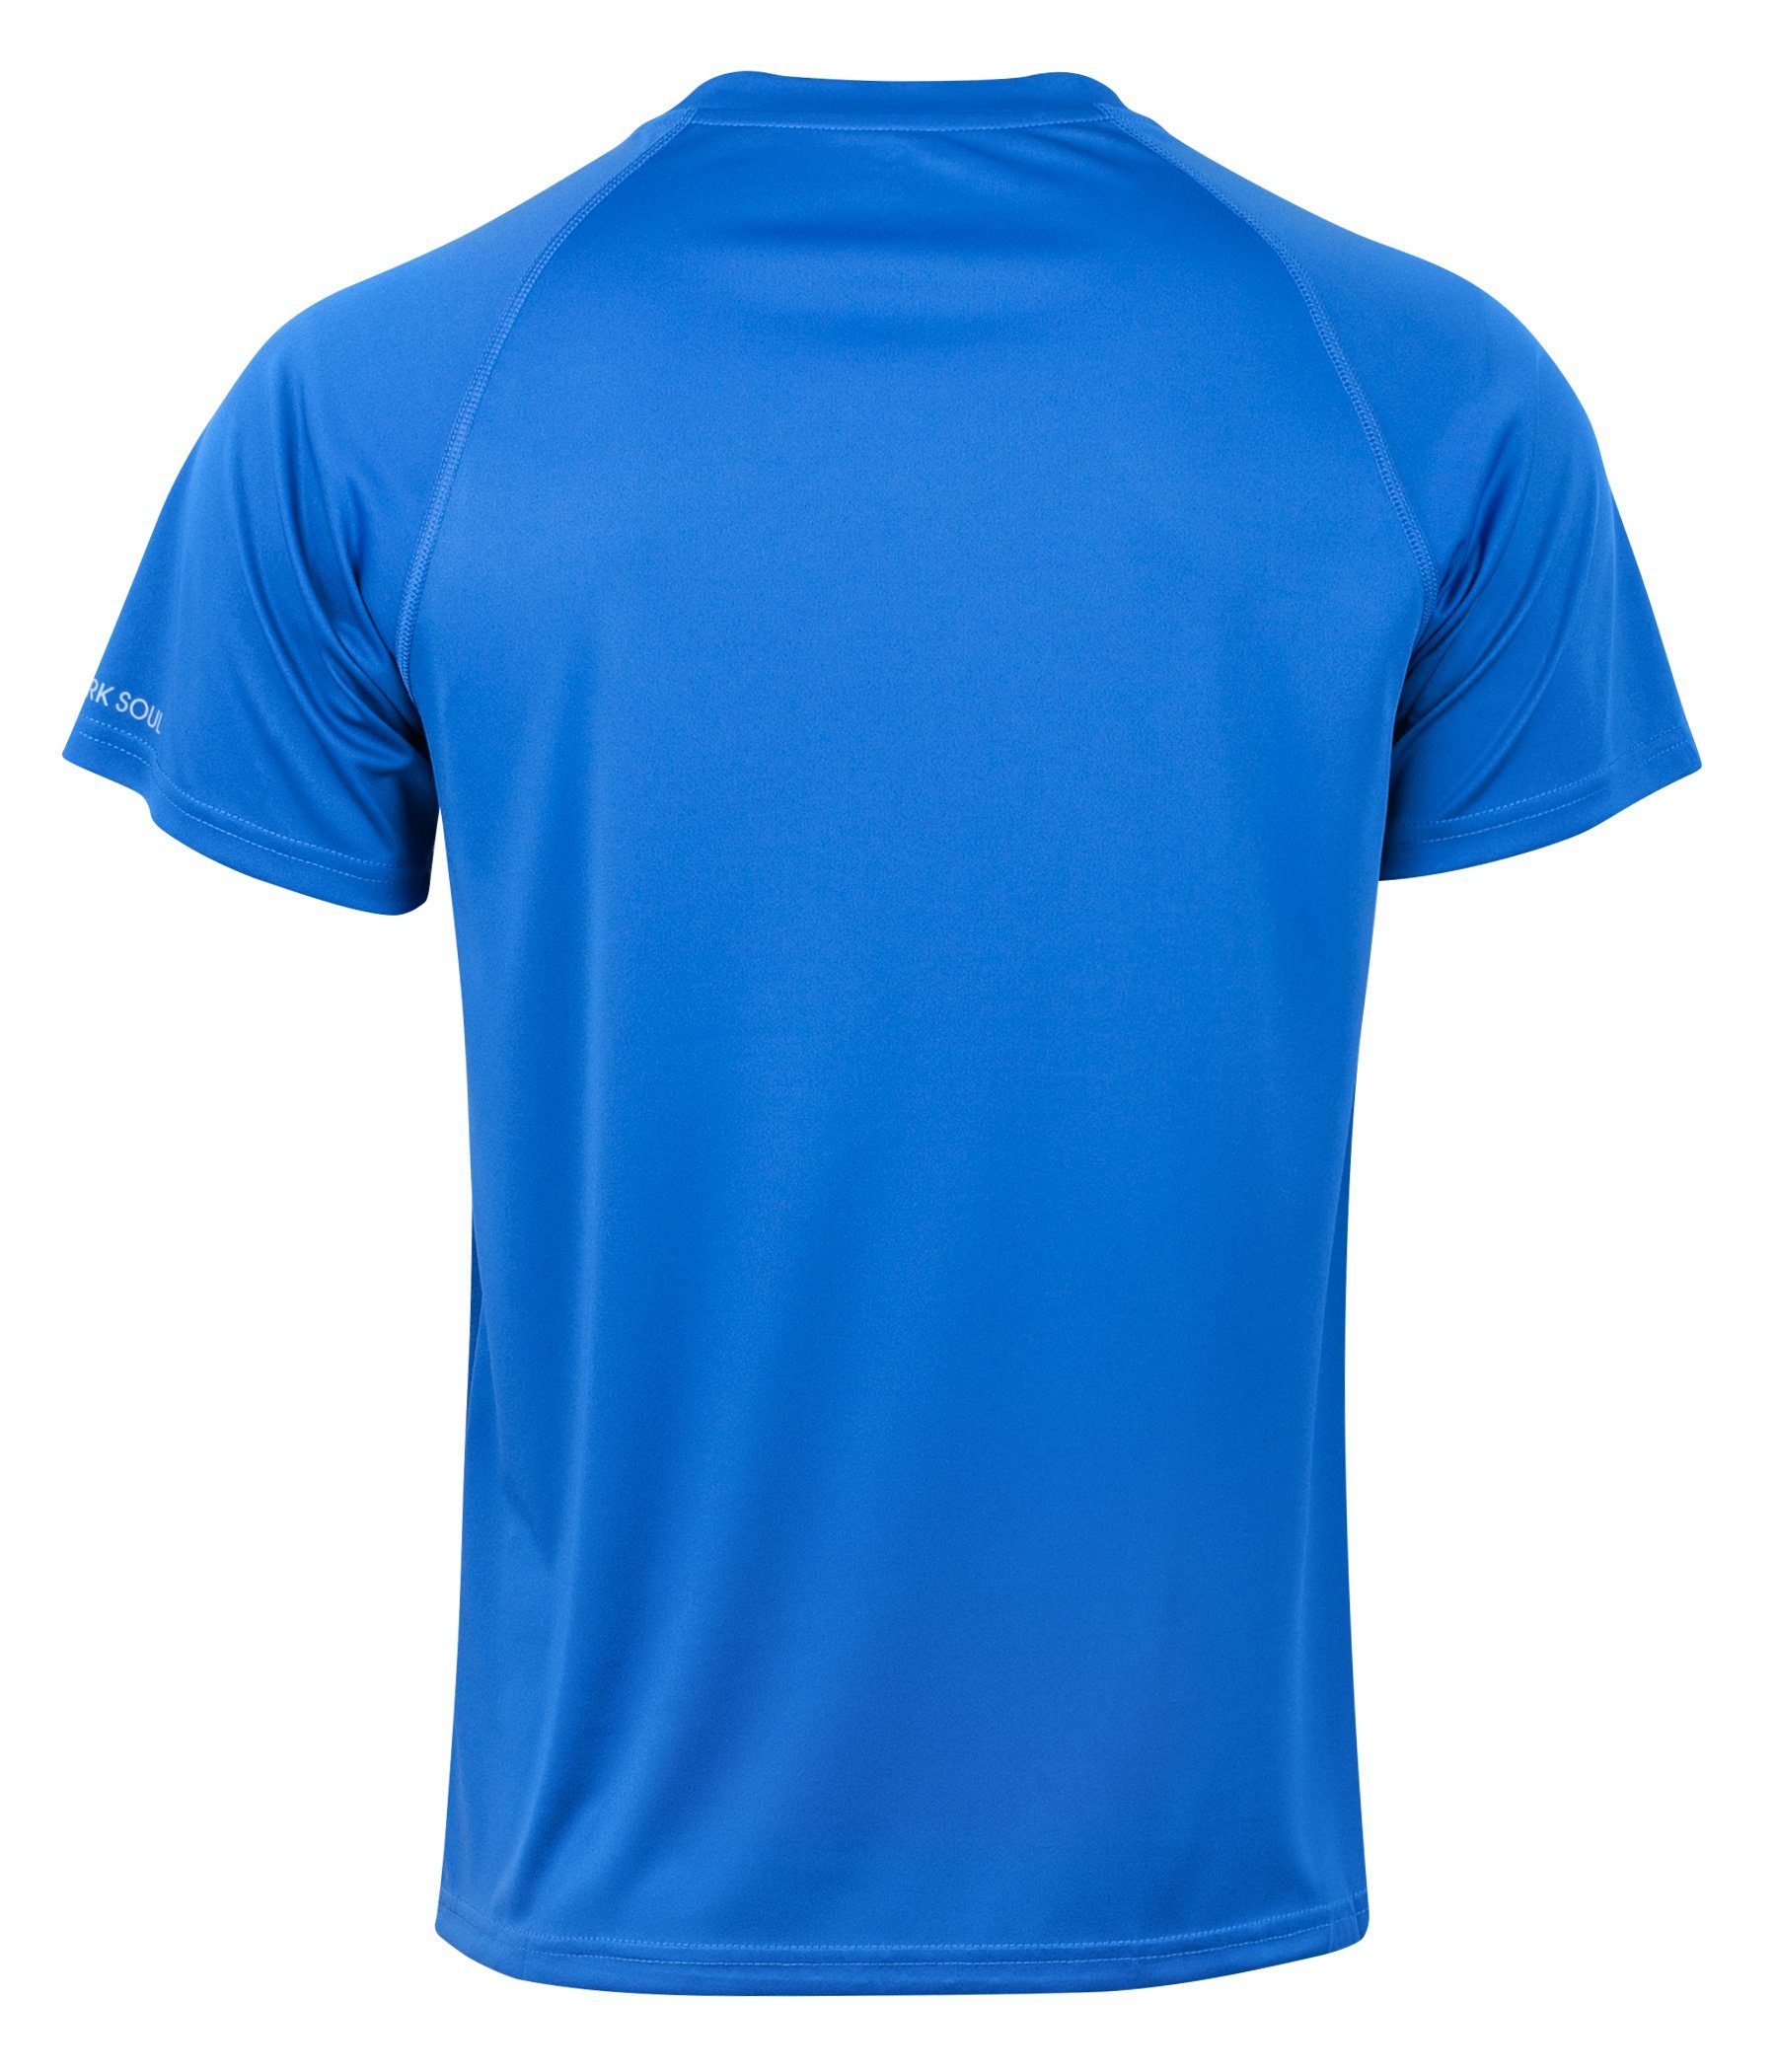 "Reflect", T-Shirt Soul® Blau Fitness Sportshirt, Kurzarm Stark Funktionsshirt Funktionsshirt mit Mesh-Einsätzen seitlichen